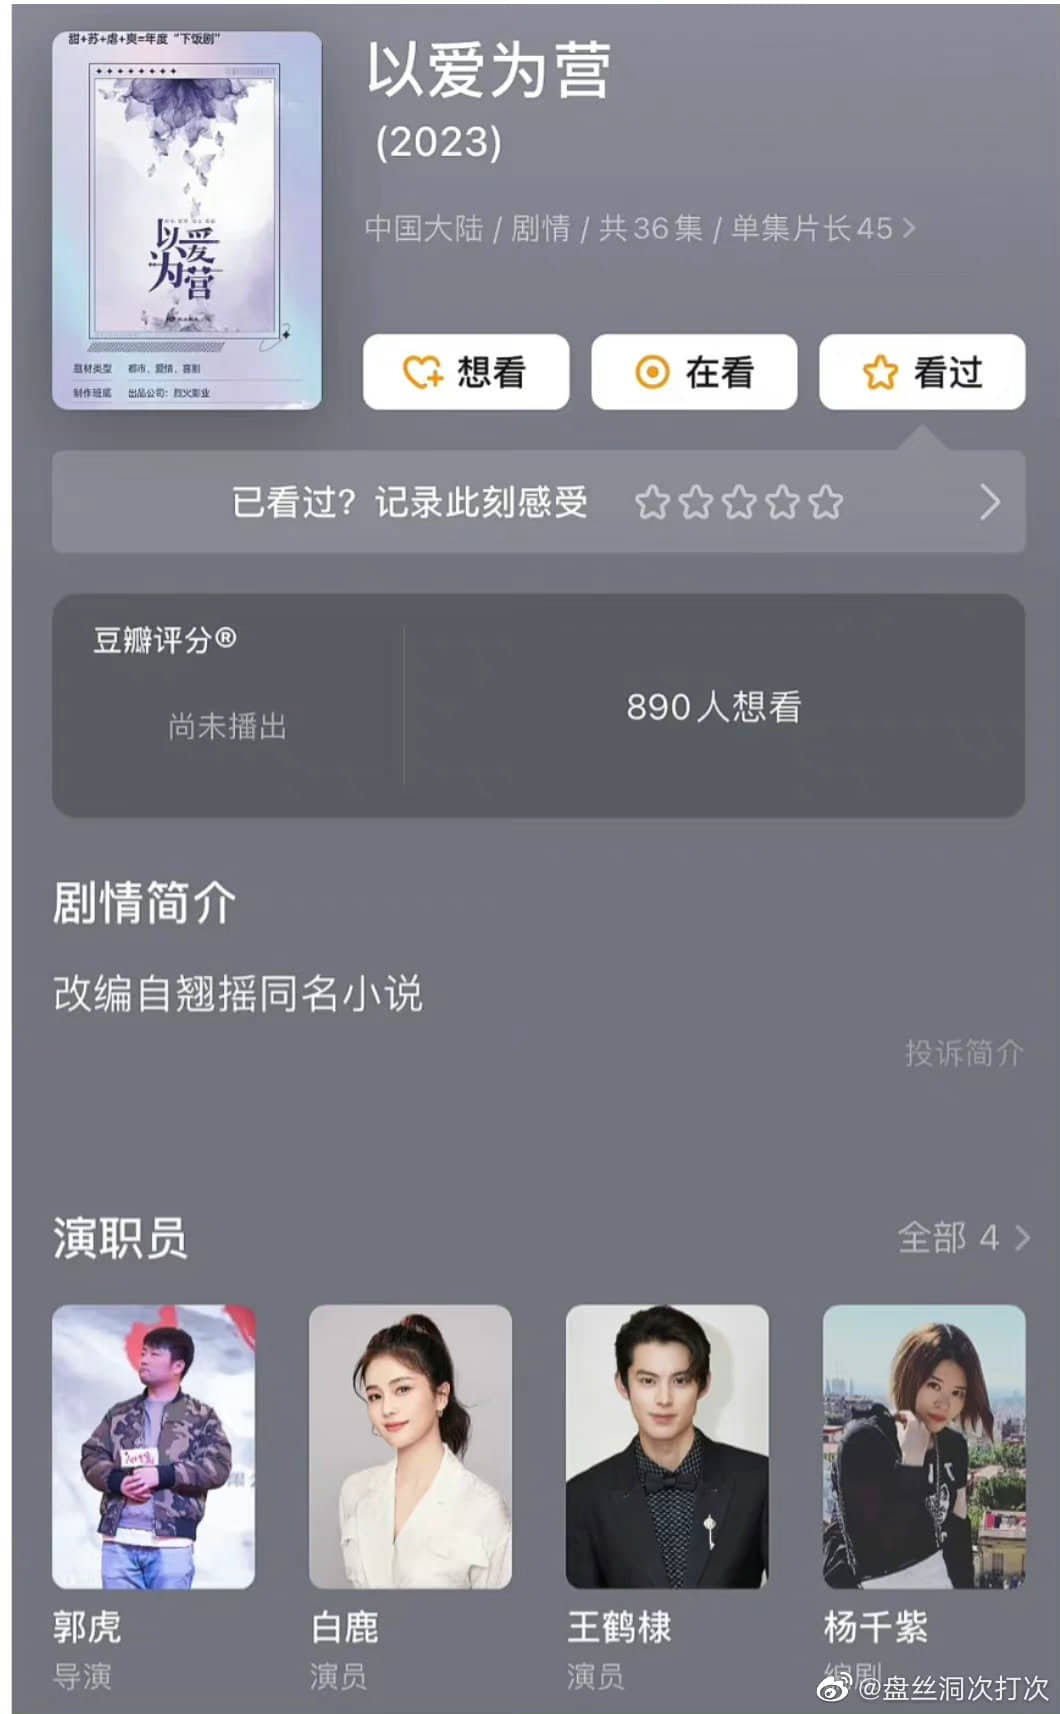 Douban Thác Liêu cập nhật hình ảnh nam nữ chính là Vương Hạc Đệ và Bạch Lộc, đổi thành tên phim mới, fan hâm mộ bật chế độ 'hóng'? - Ảnh 2